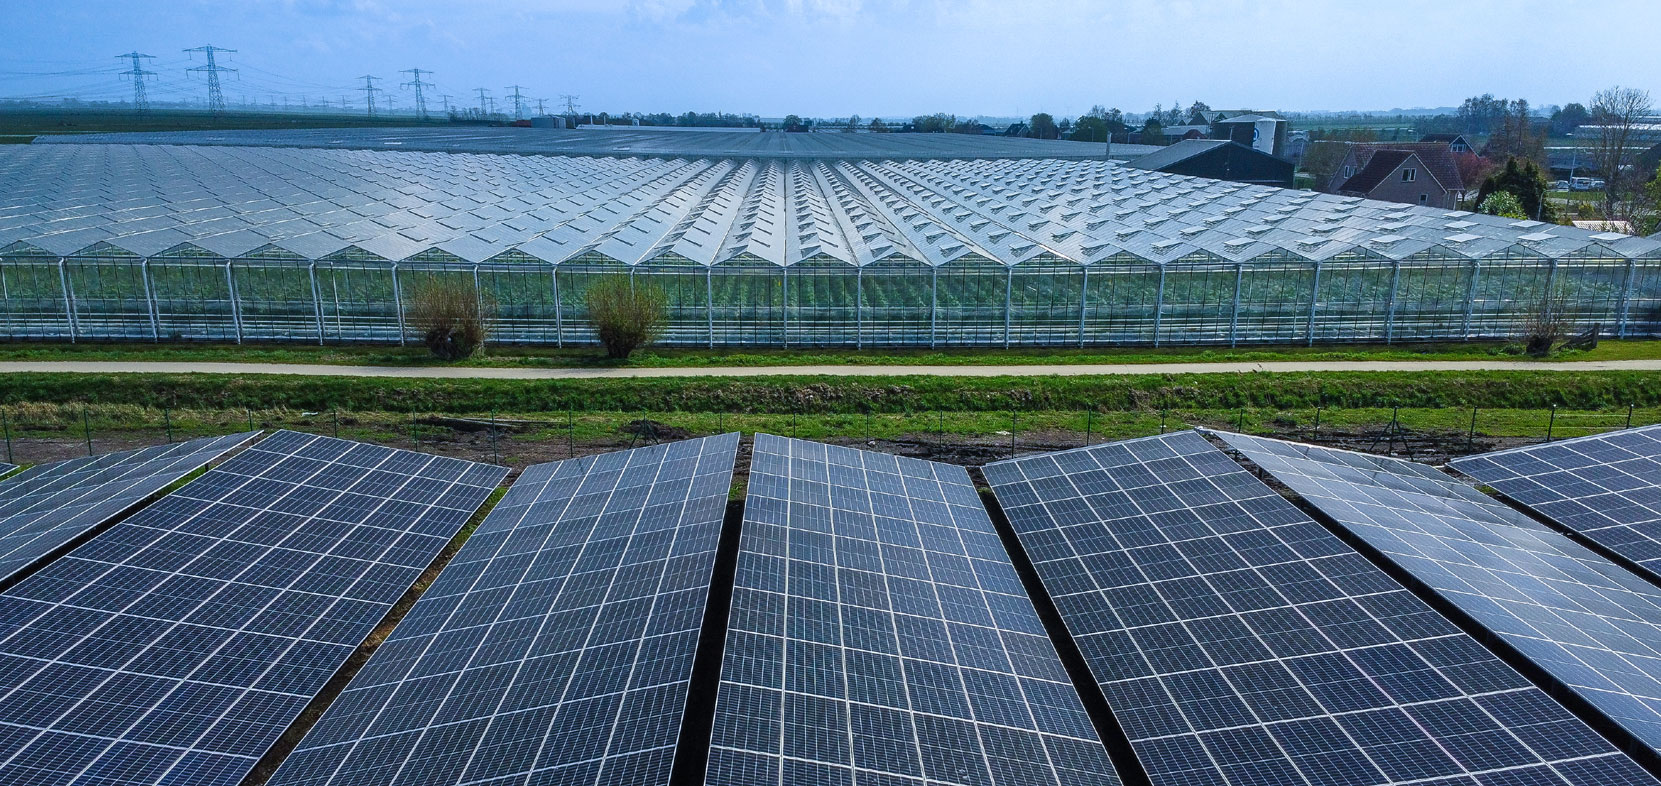 Solarparks tragen zur Reduktion von CO2-Emissionen bei